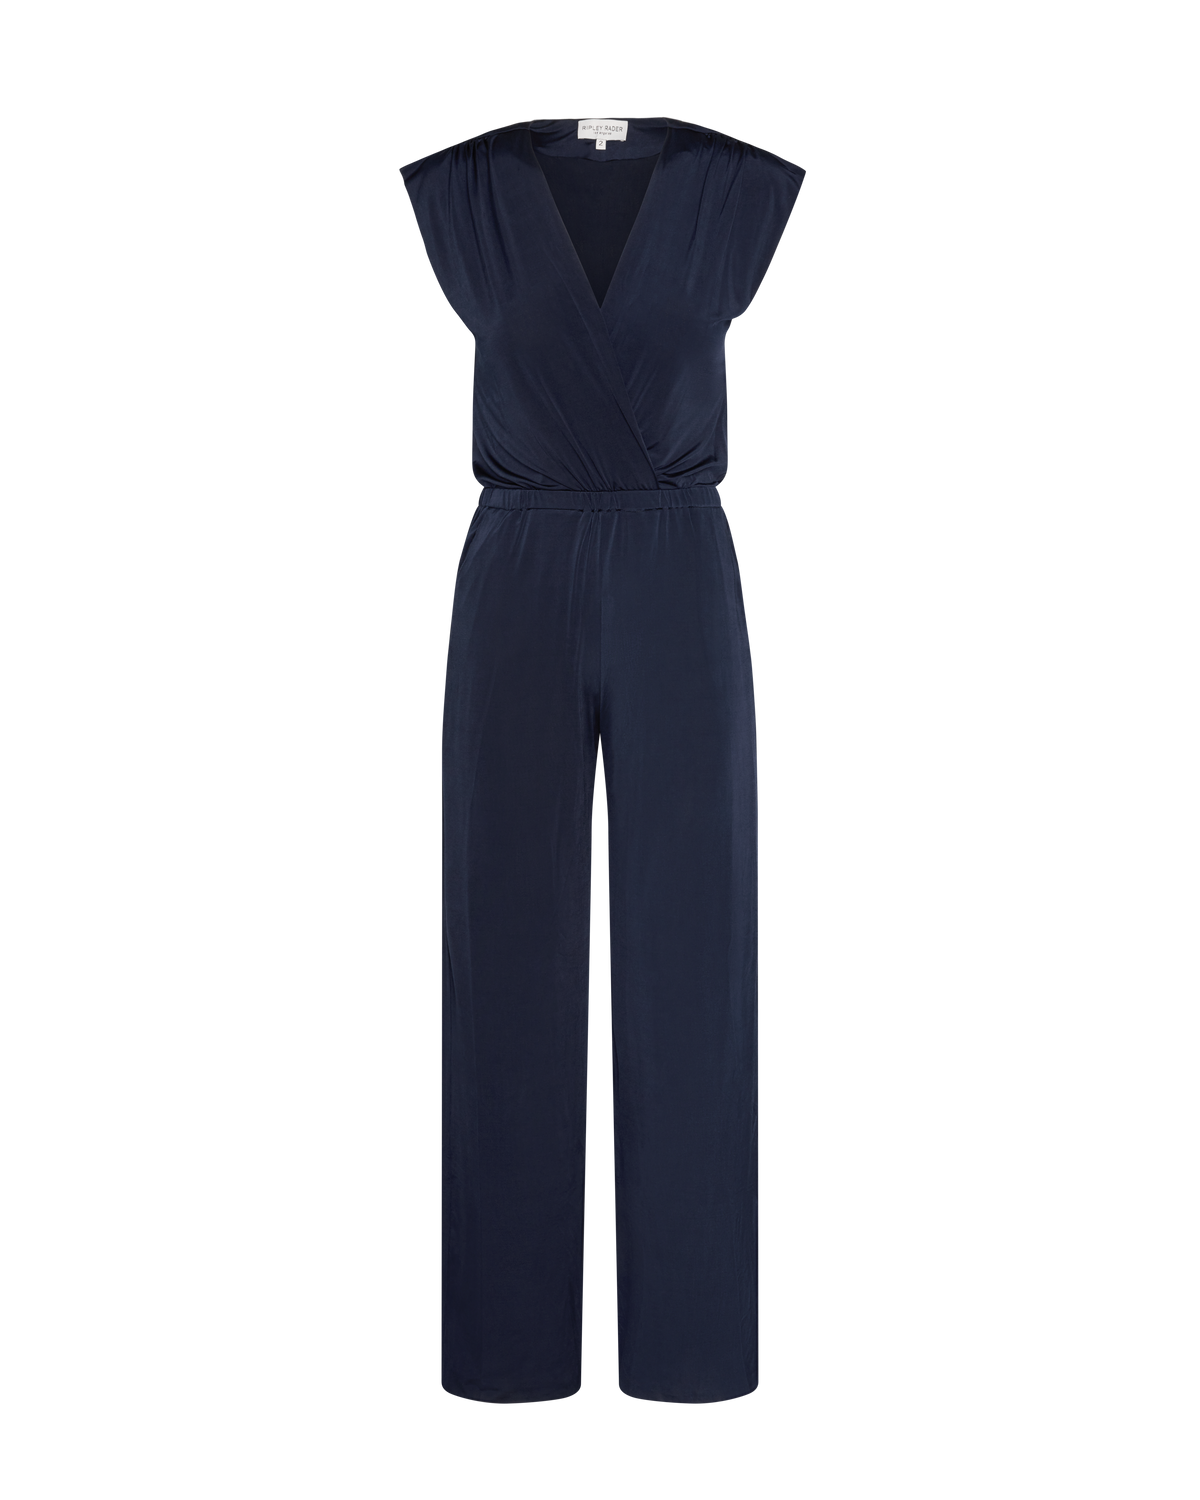 Navy Jumpsuit - Classic